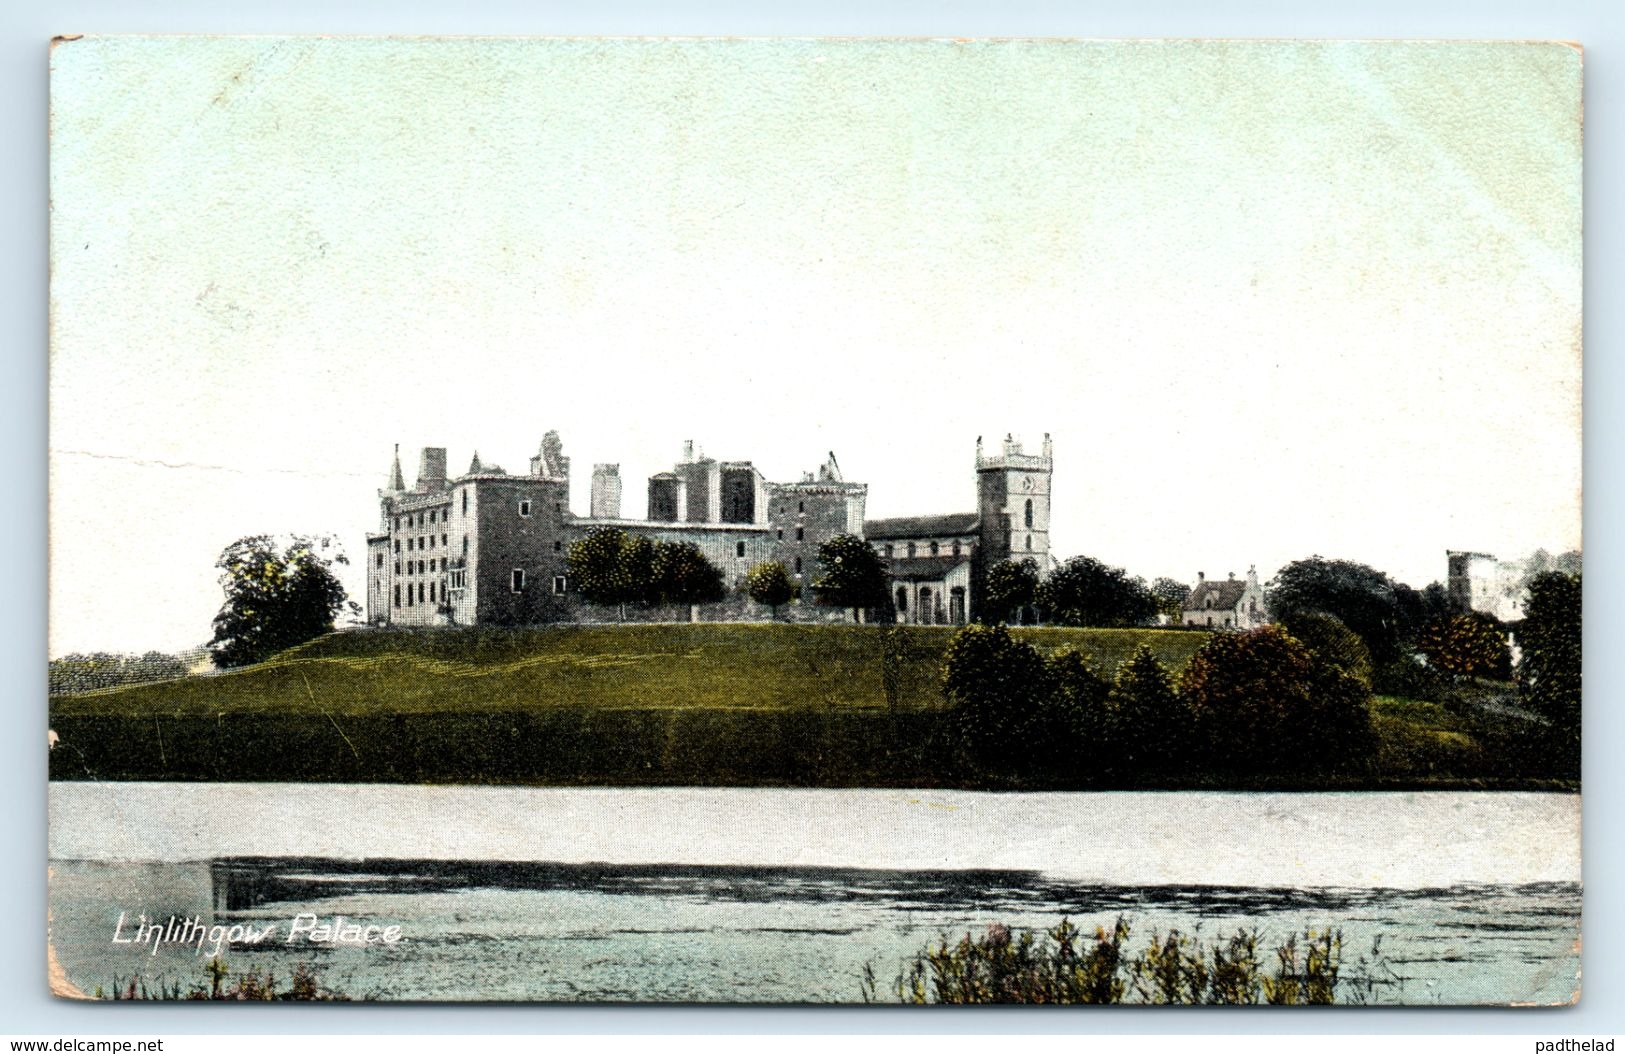 POSTCARD LINLITHGOW PALACE WEST LOTHIAN SCOTLAND 1908 - West Lothian